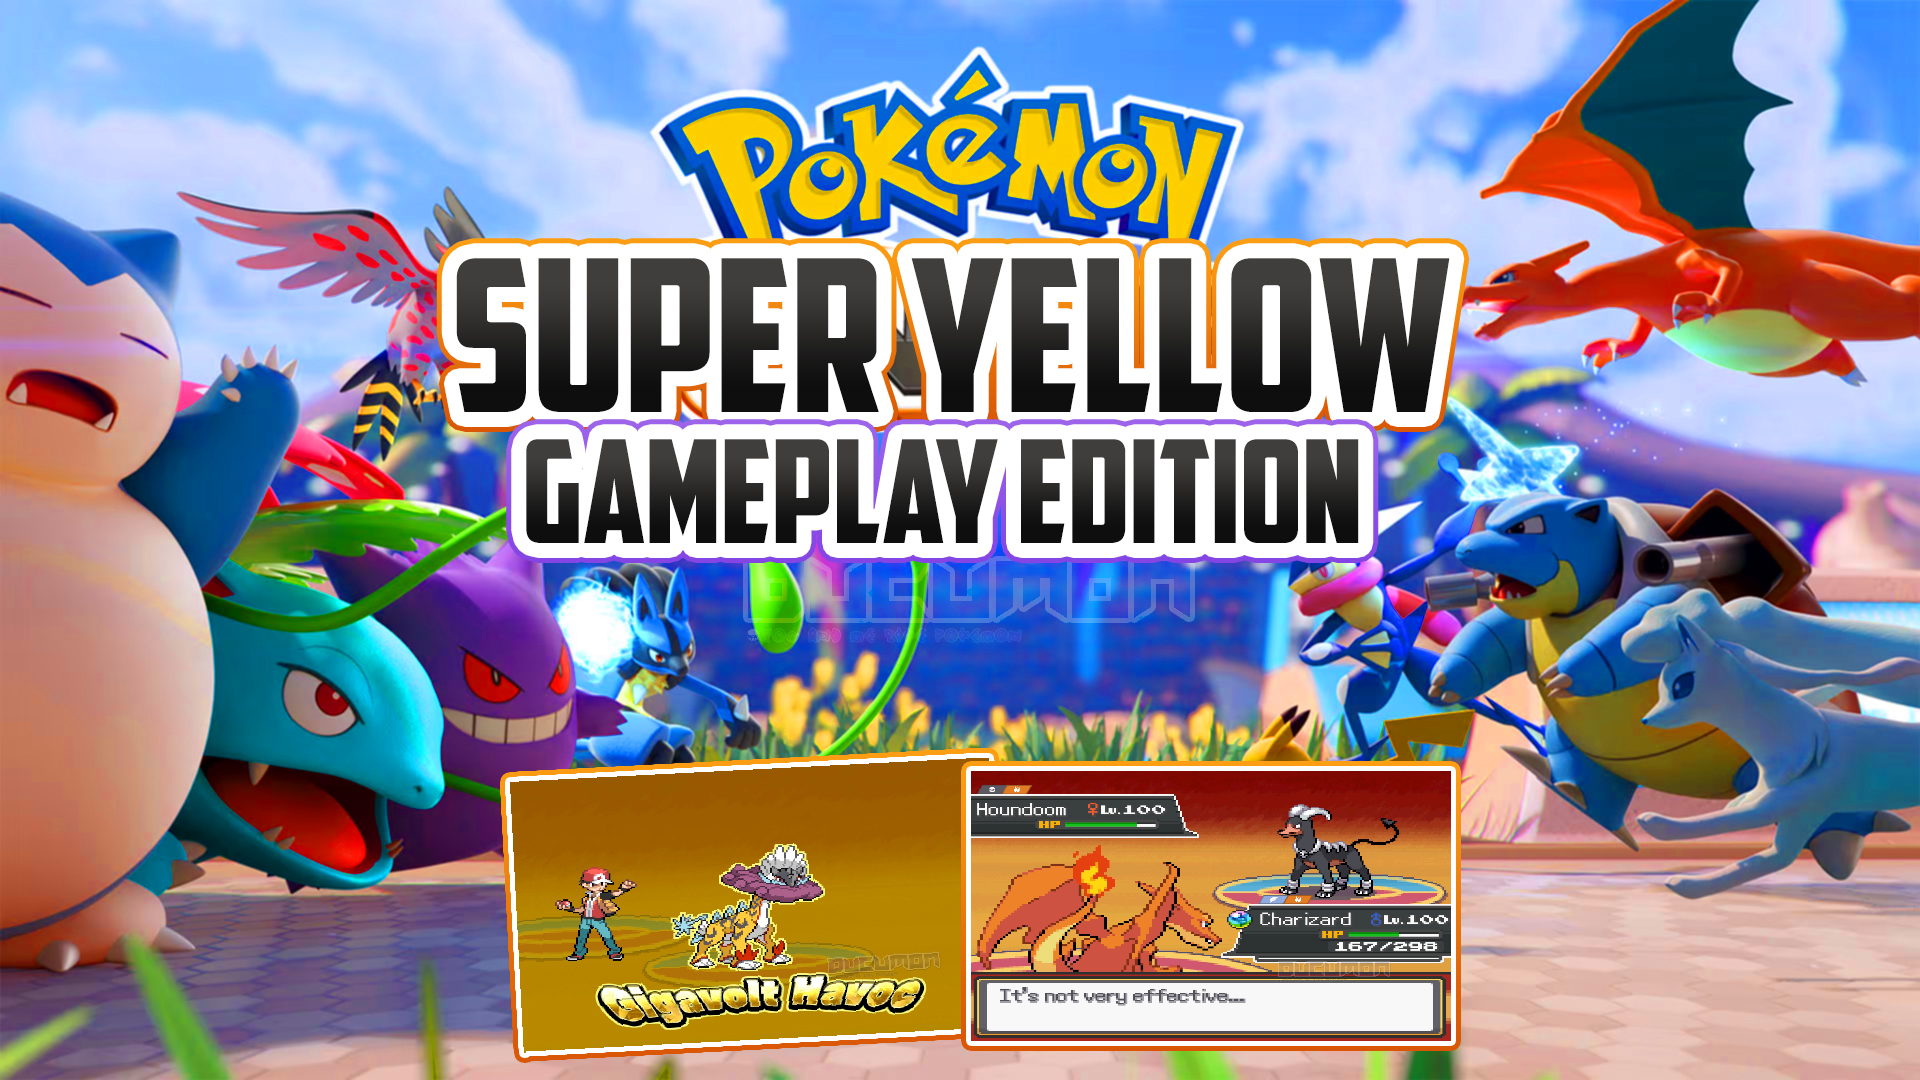 Pokemon Super Yellow Gameplay Edition — игра, созданная фанатами. Вы можете создать команду своей ме